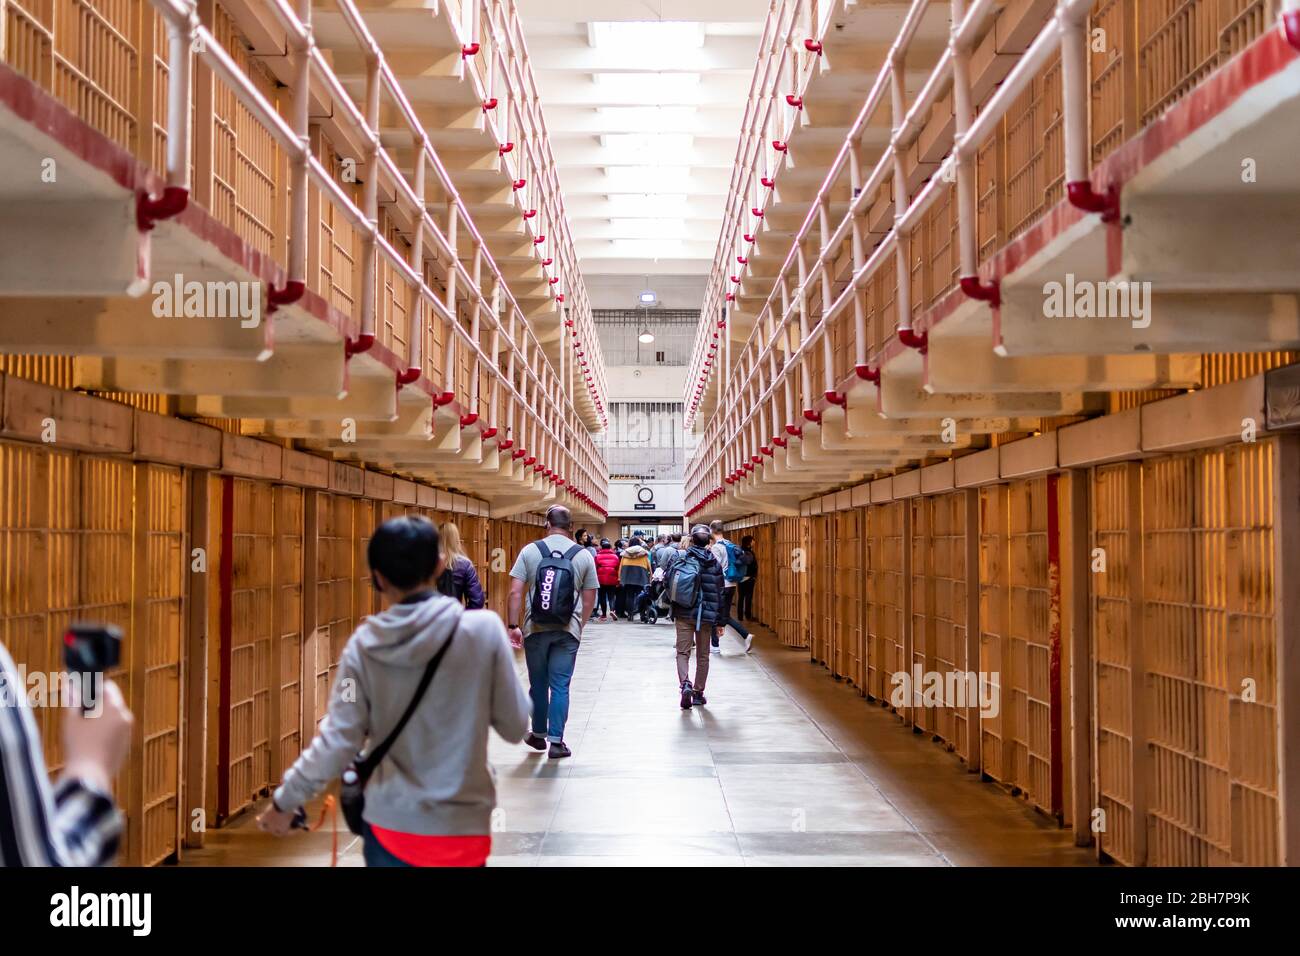 Prison d'Alcatraz B Block prisonniers cellule et quelques touristes et visiteurs à l'intérieur de la maison de cellules, San Francisco Californie États-Unis, 30 mars 2020 Banque D'Images